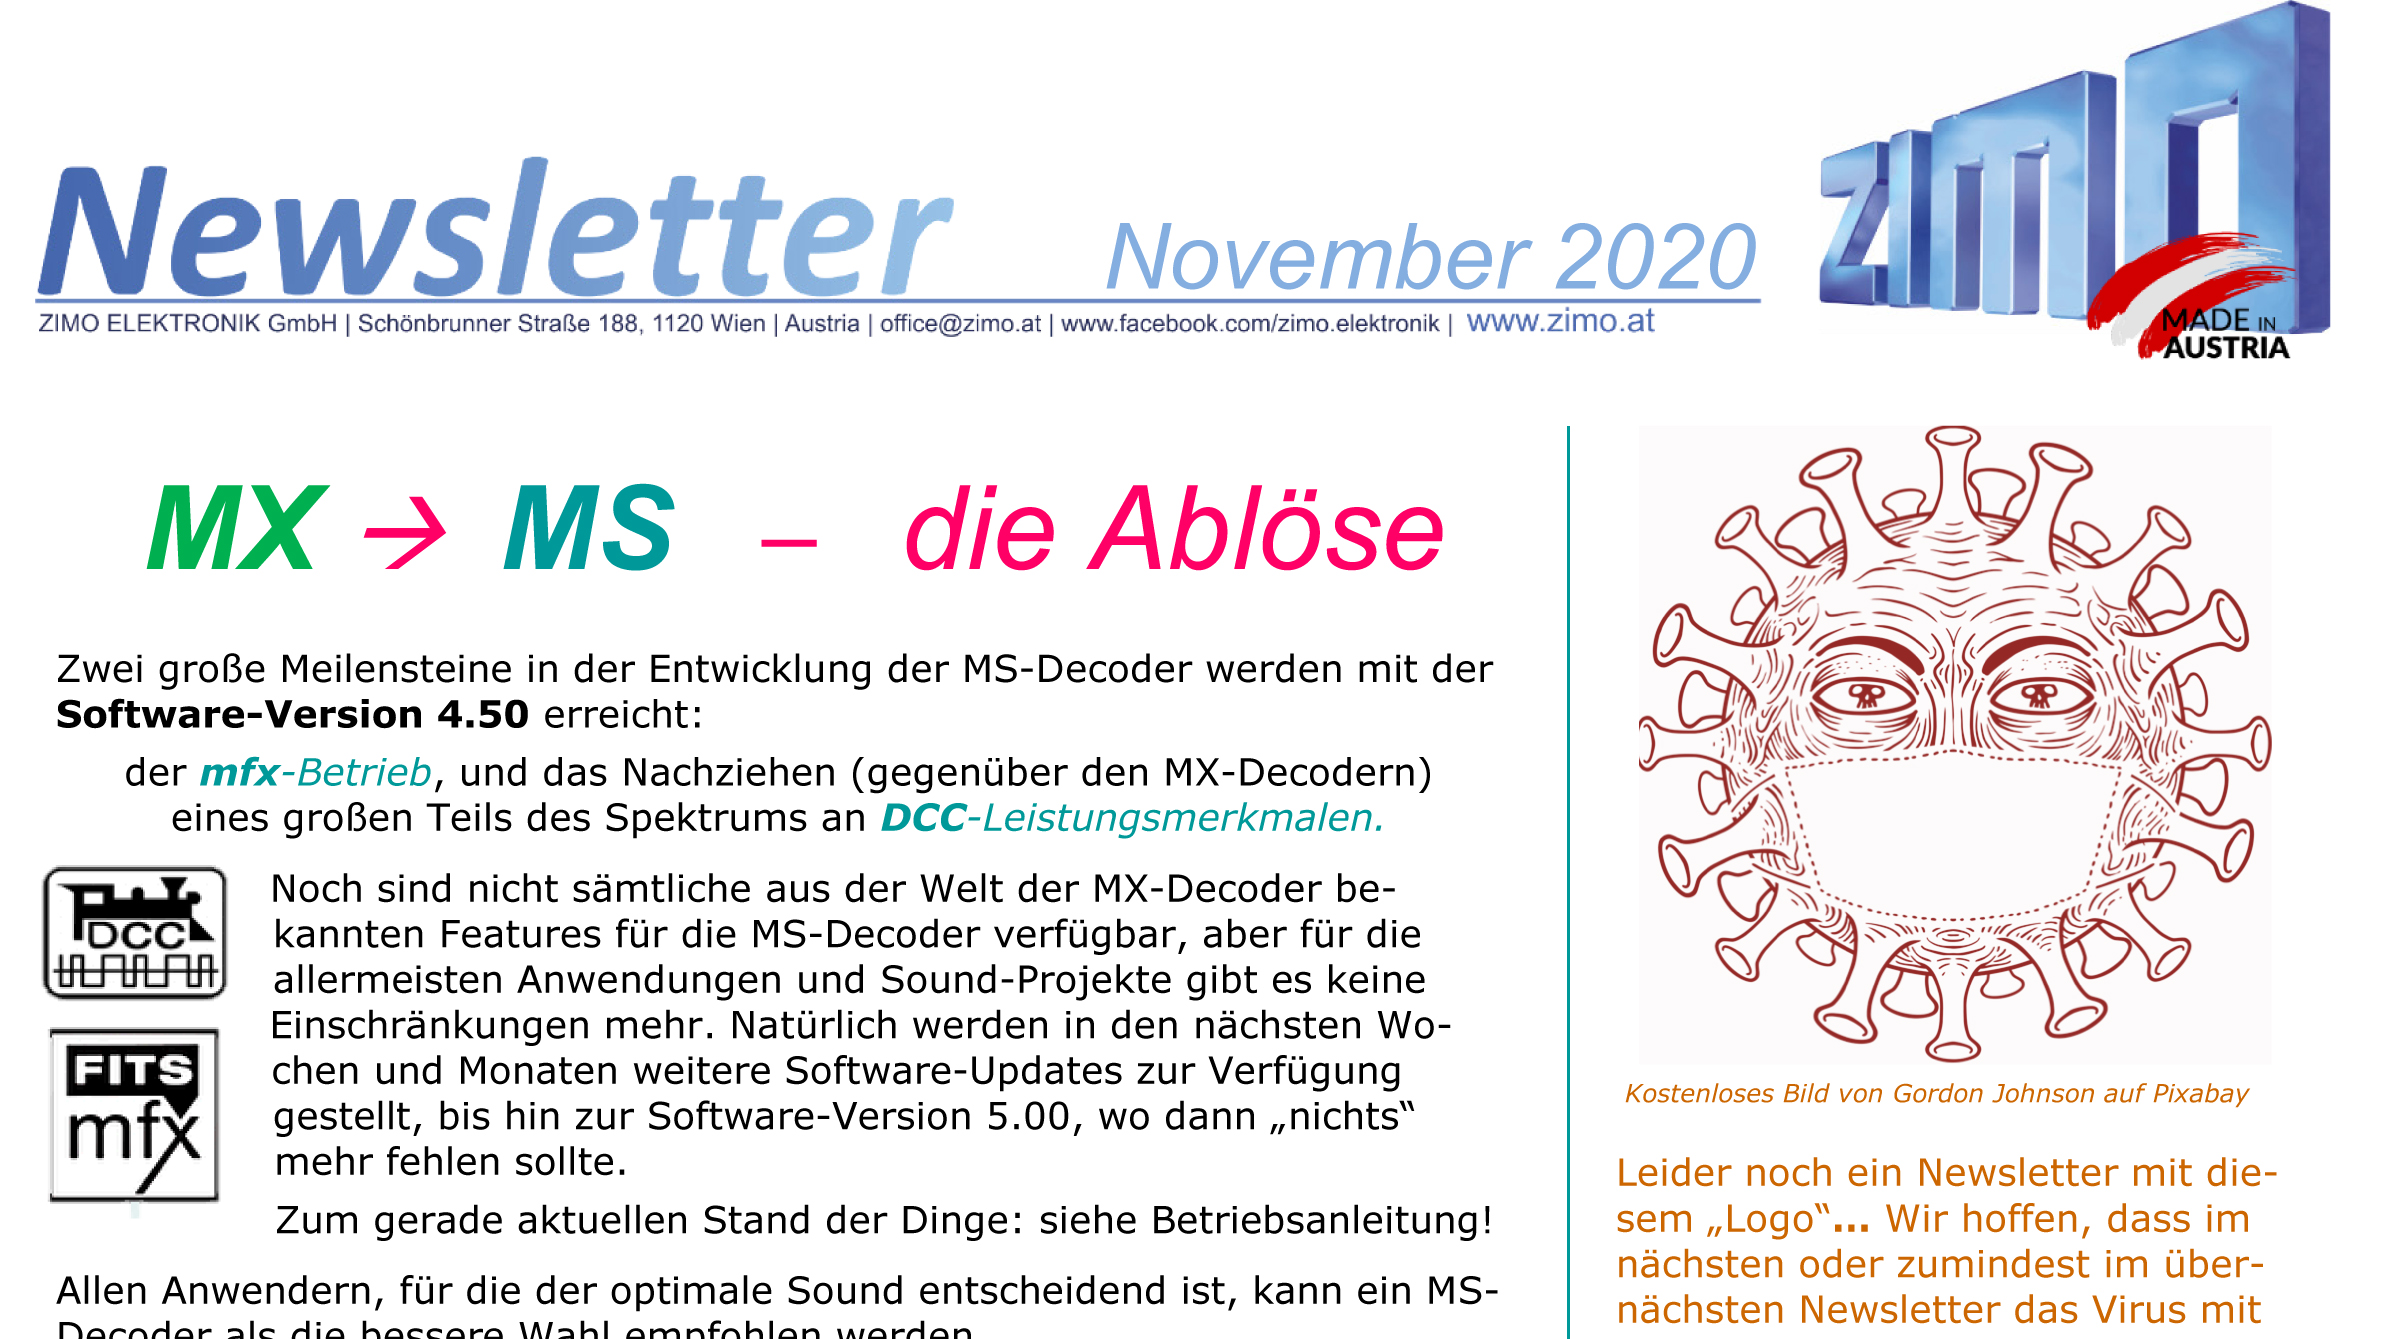 ZIMO Newsletter November 2020 - hier aufs Bild klicken und den ganzen Report lesen. 